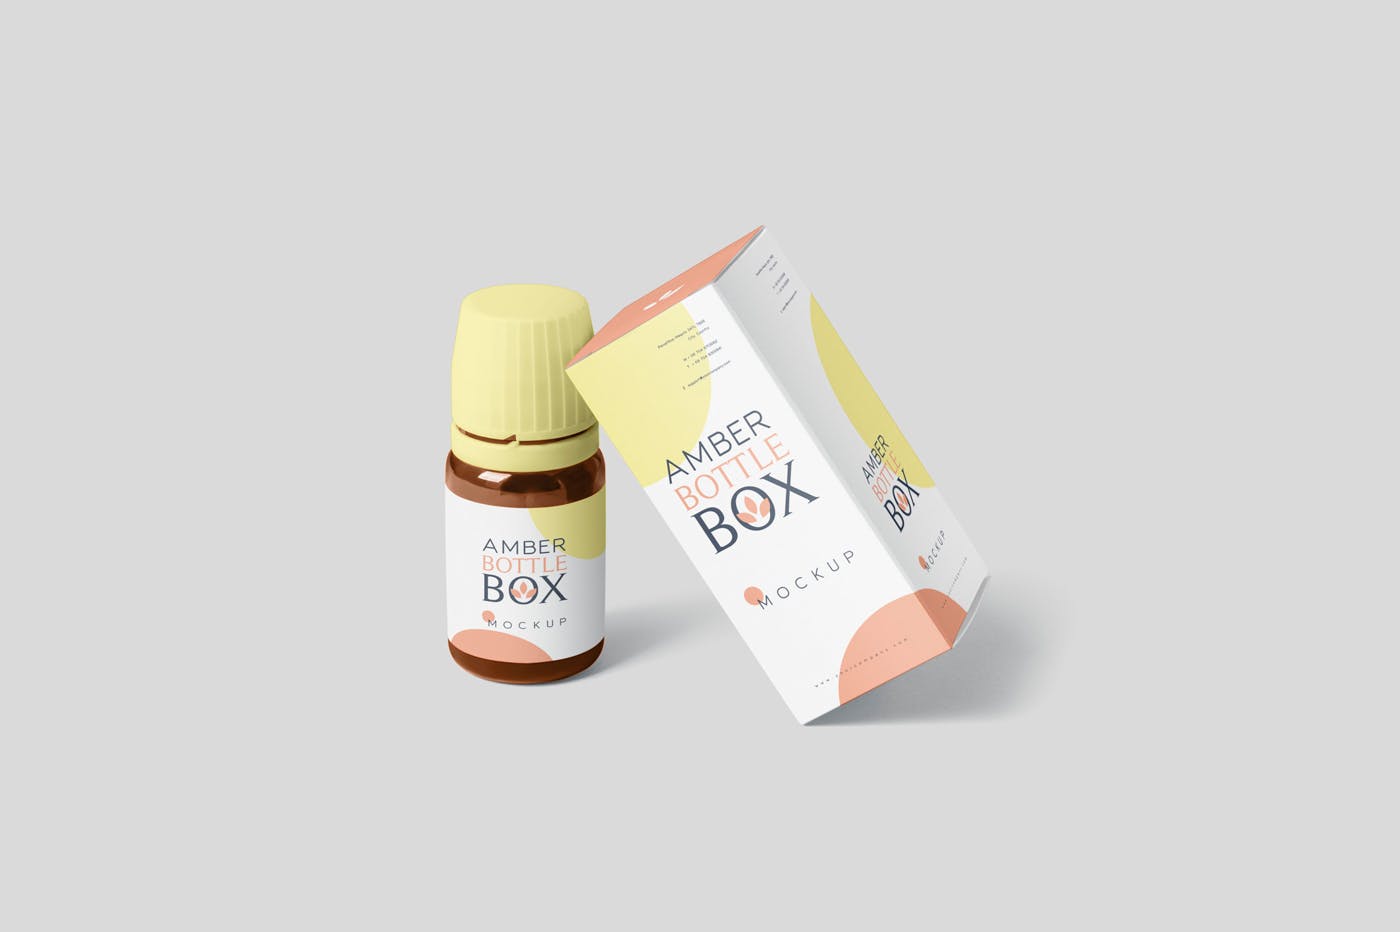 药物瓶&包装纸盒设计图非凡图库精选模板 Amber Bottle Box Mockup Set插图(4)